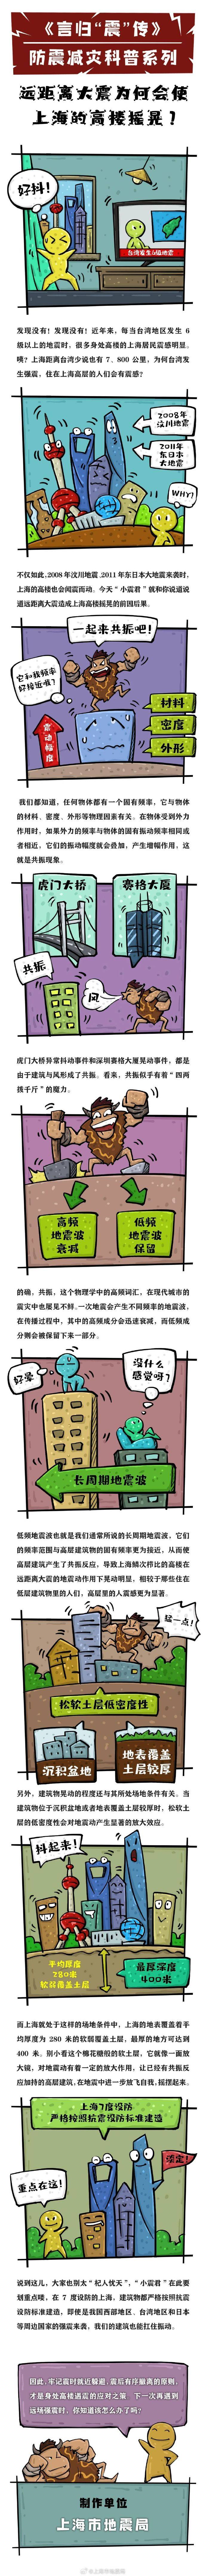 上海市地震侷的微博，台灣地區發生中強地震，上海市民關注高層建築安全，市地震侷給出權威解答